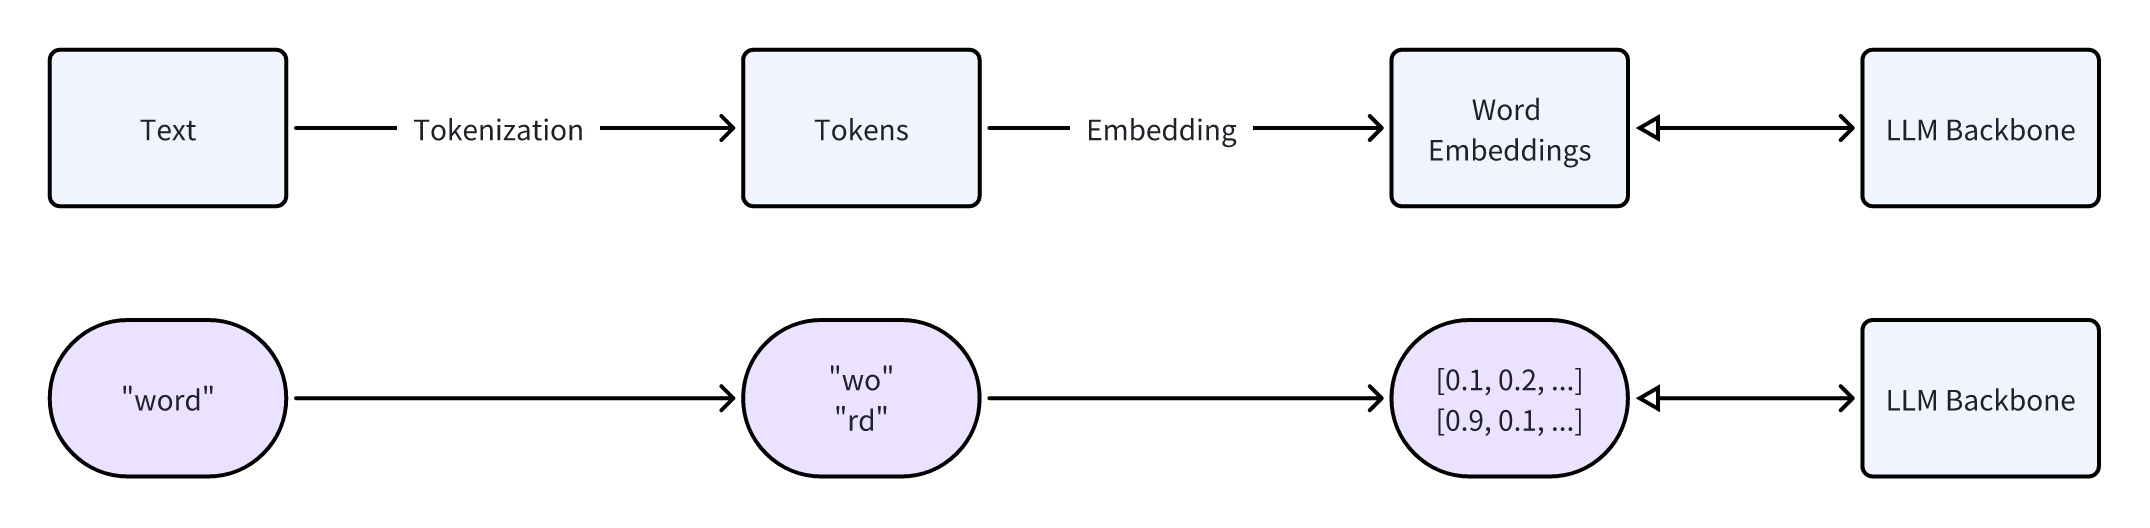 tokenization_embedding